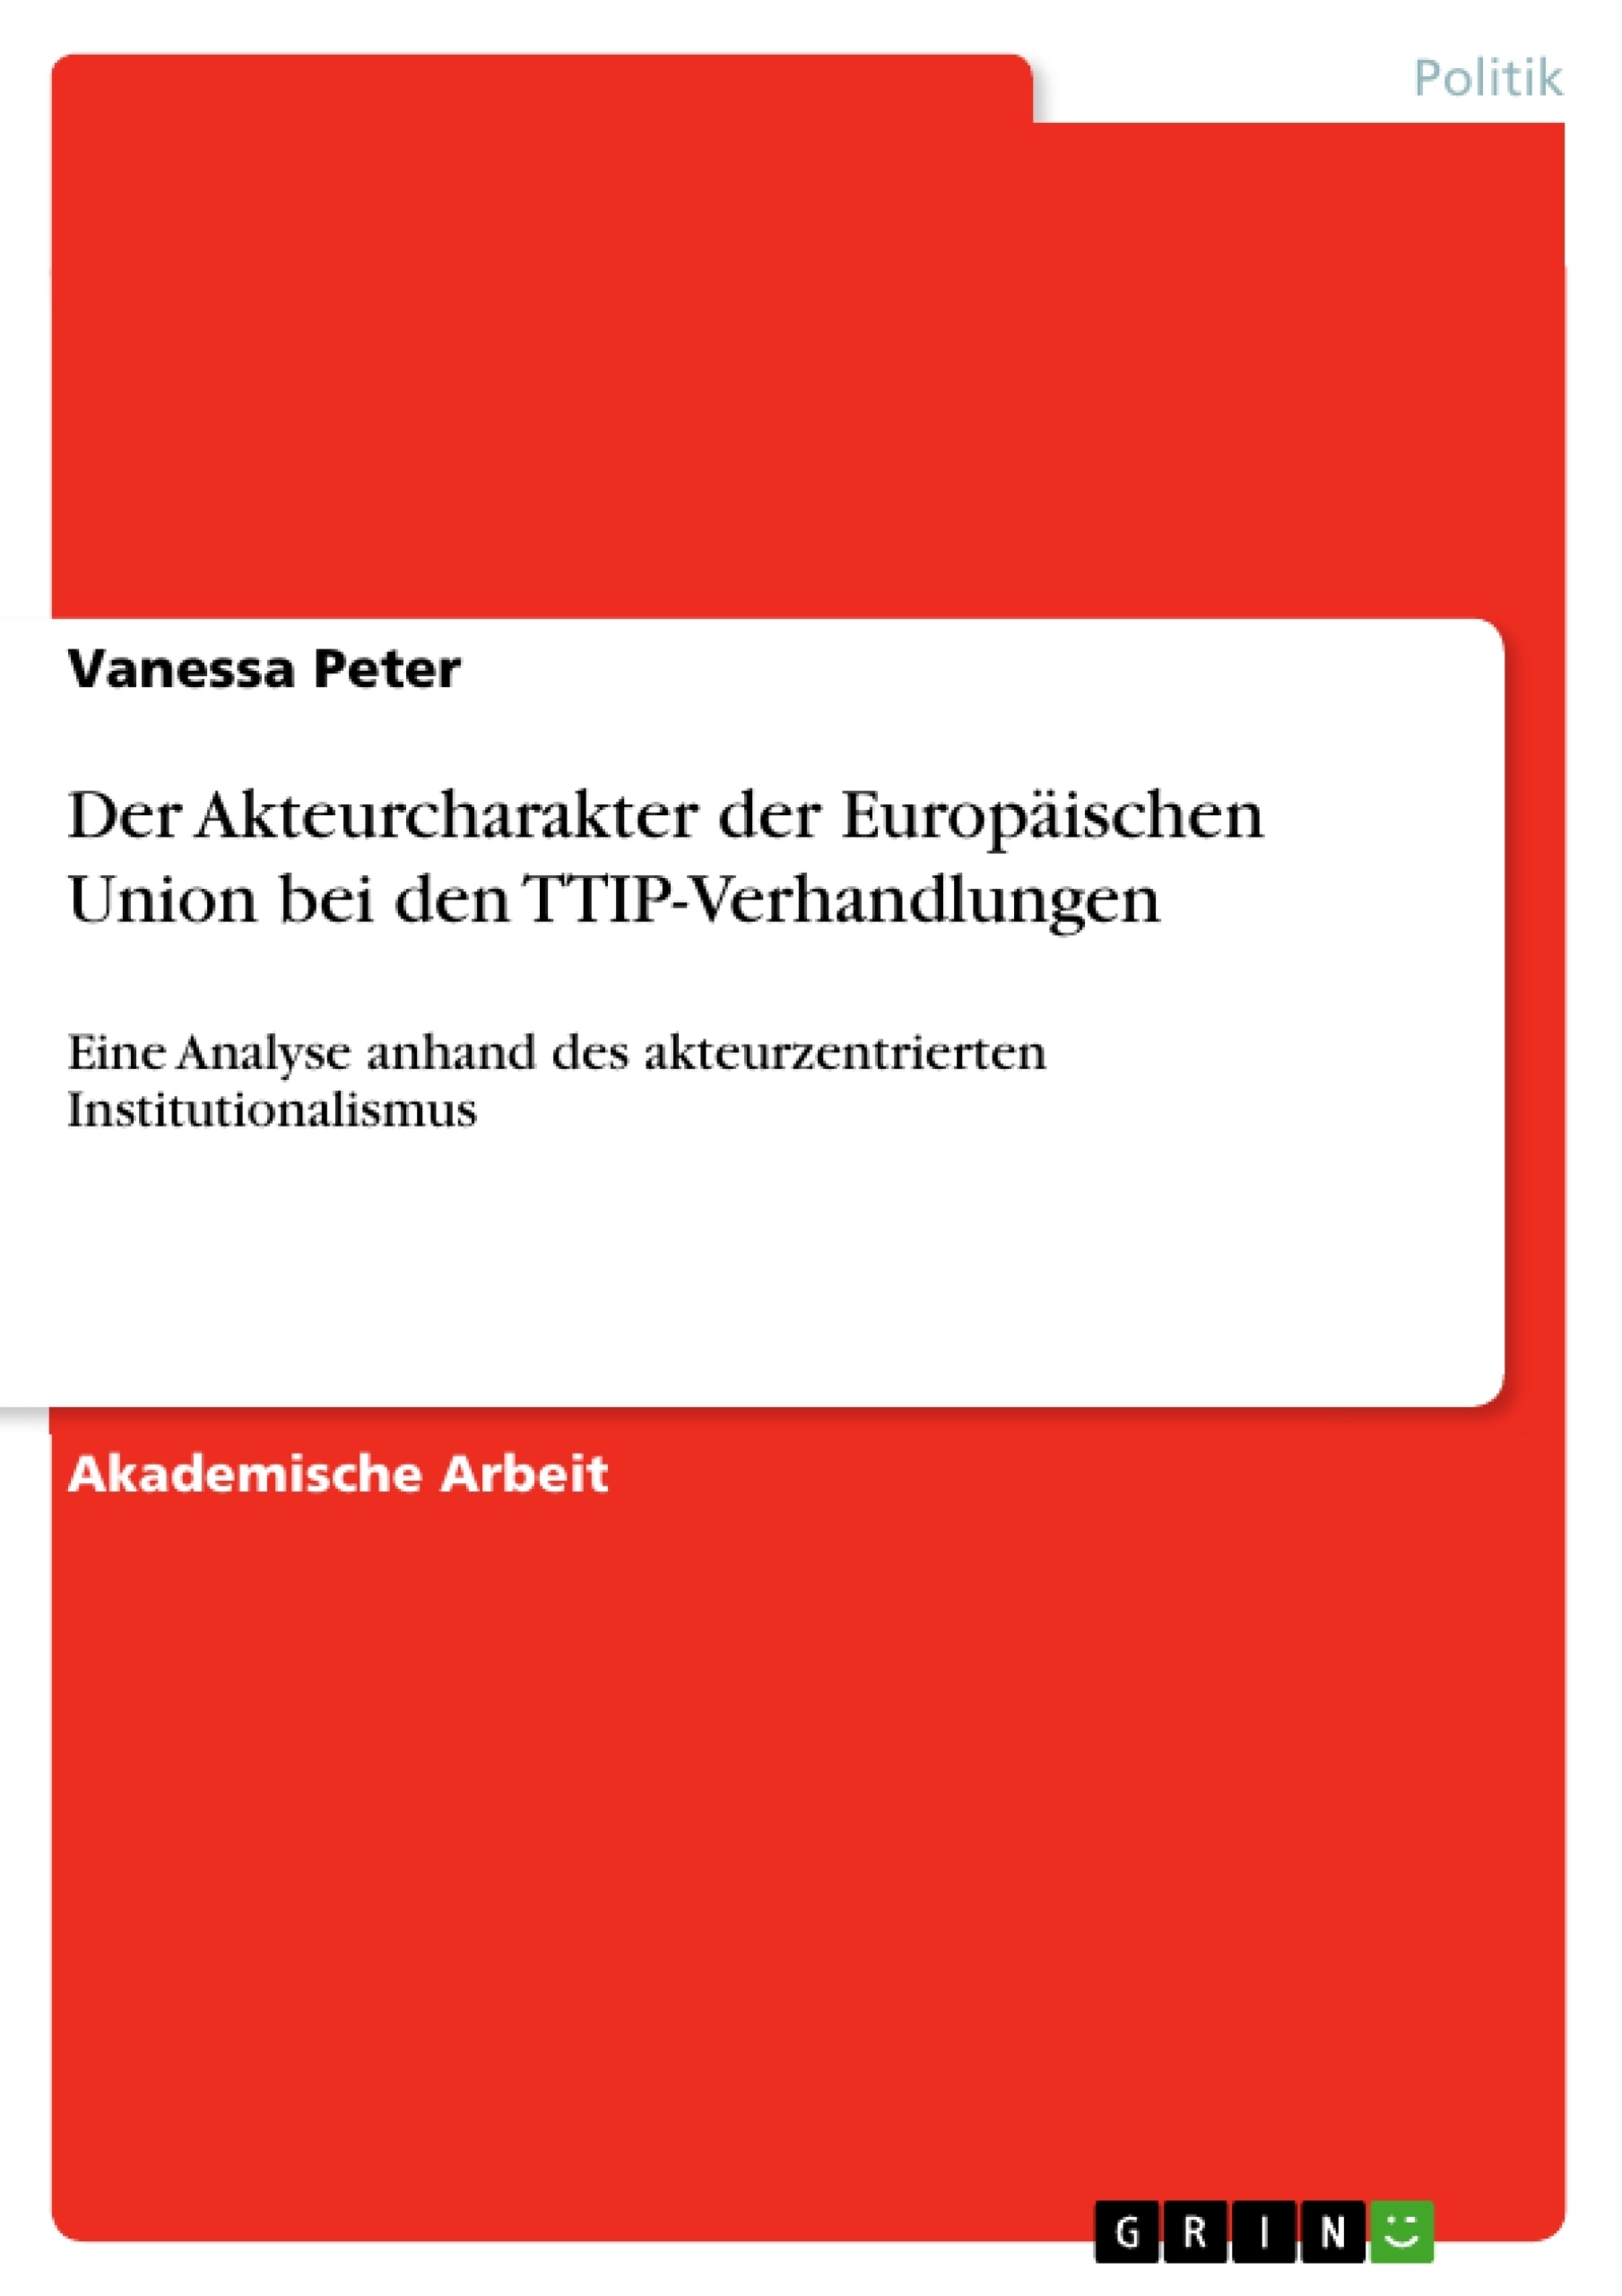 Título: Der Akteurcharakter der Europäischen Union bei den TTIP-Verhandlungen